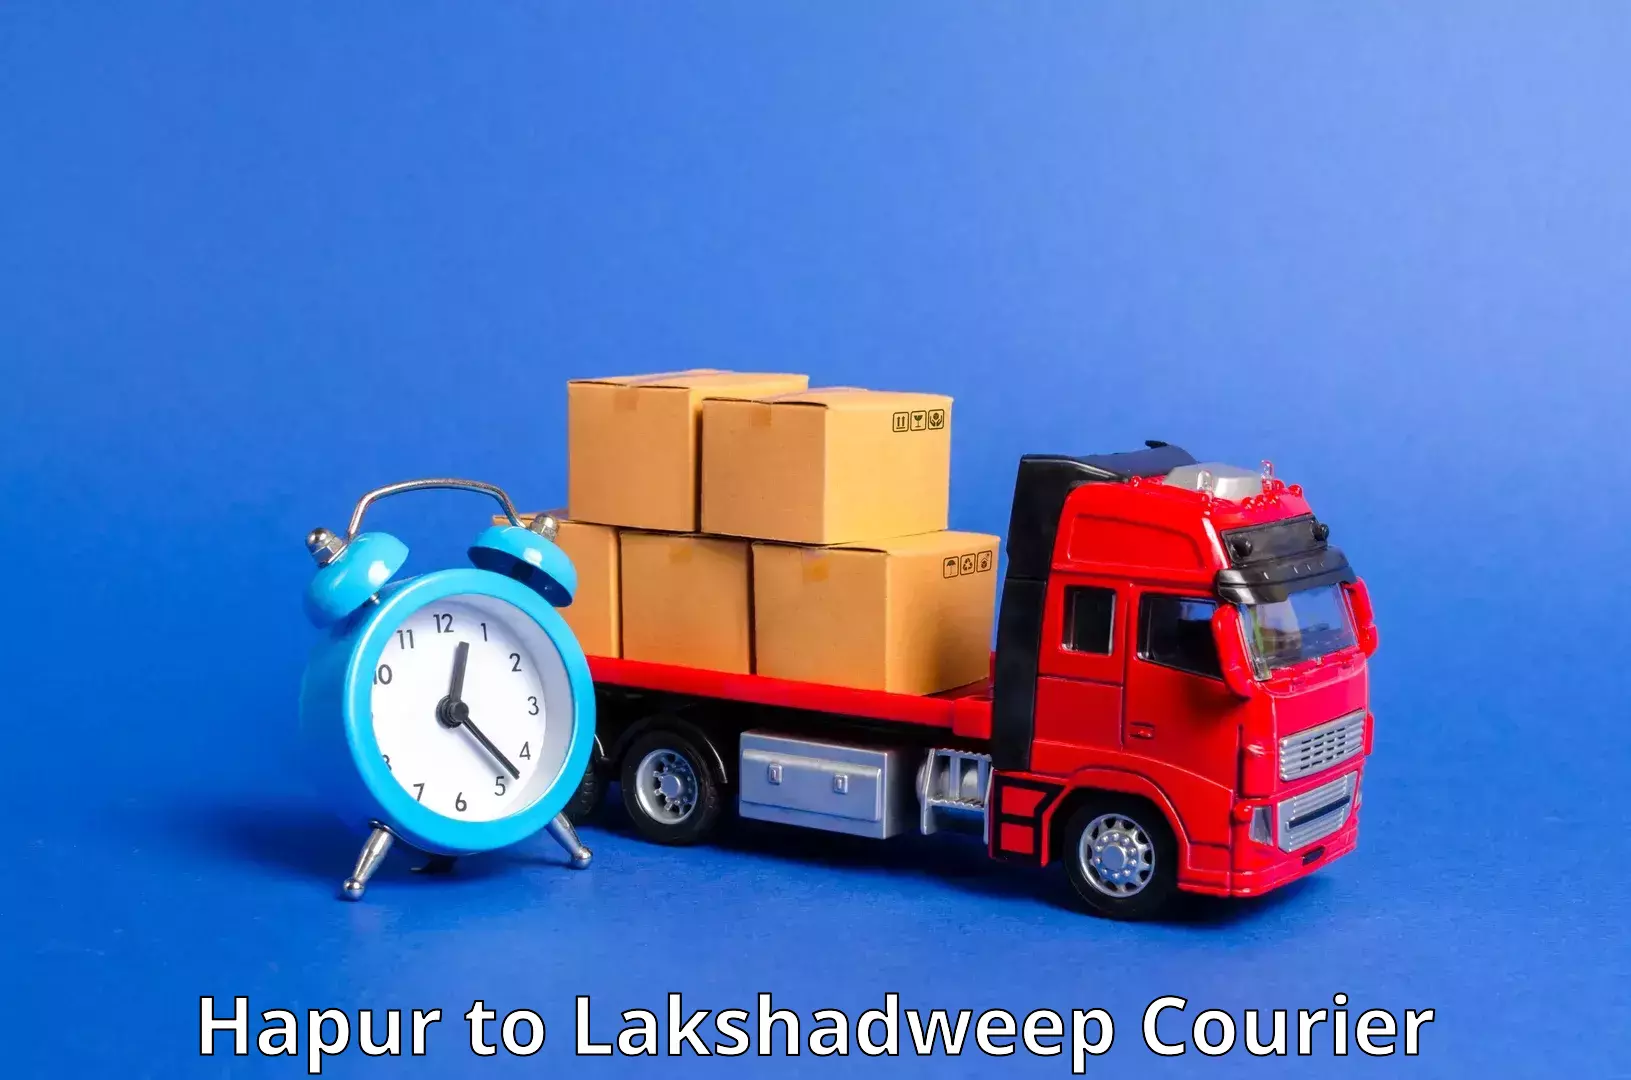 Customer-centric shipping Hapur to Lakshadweep